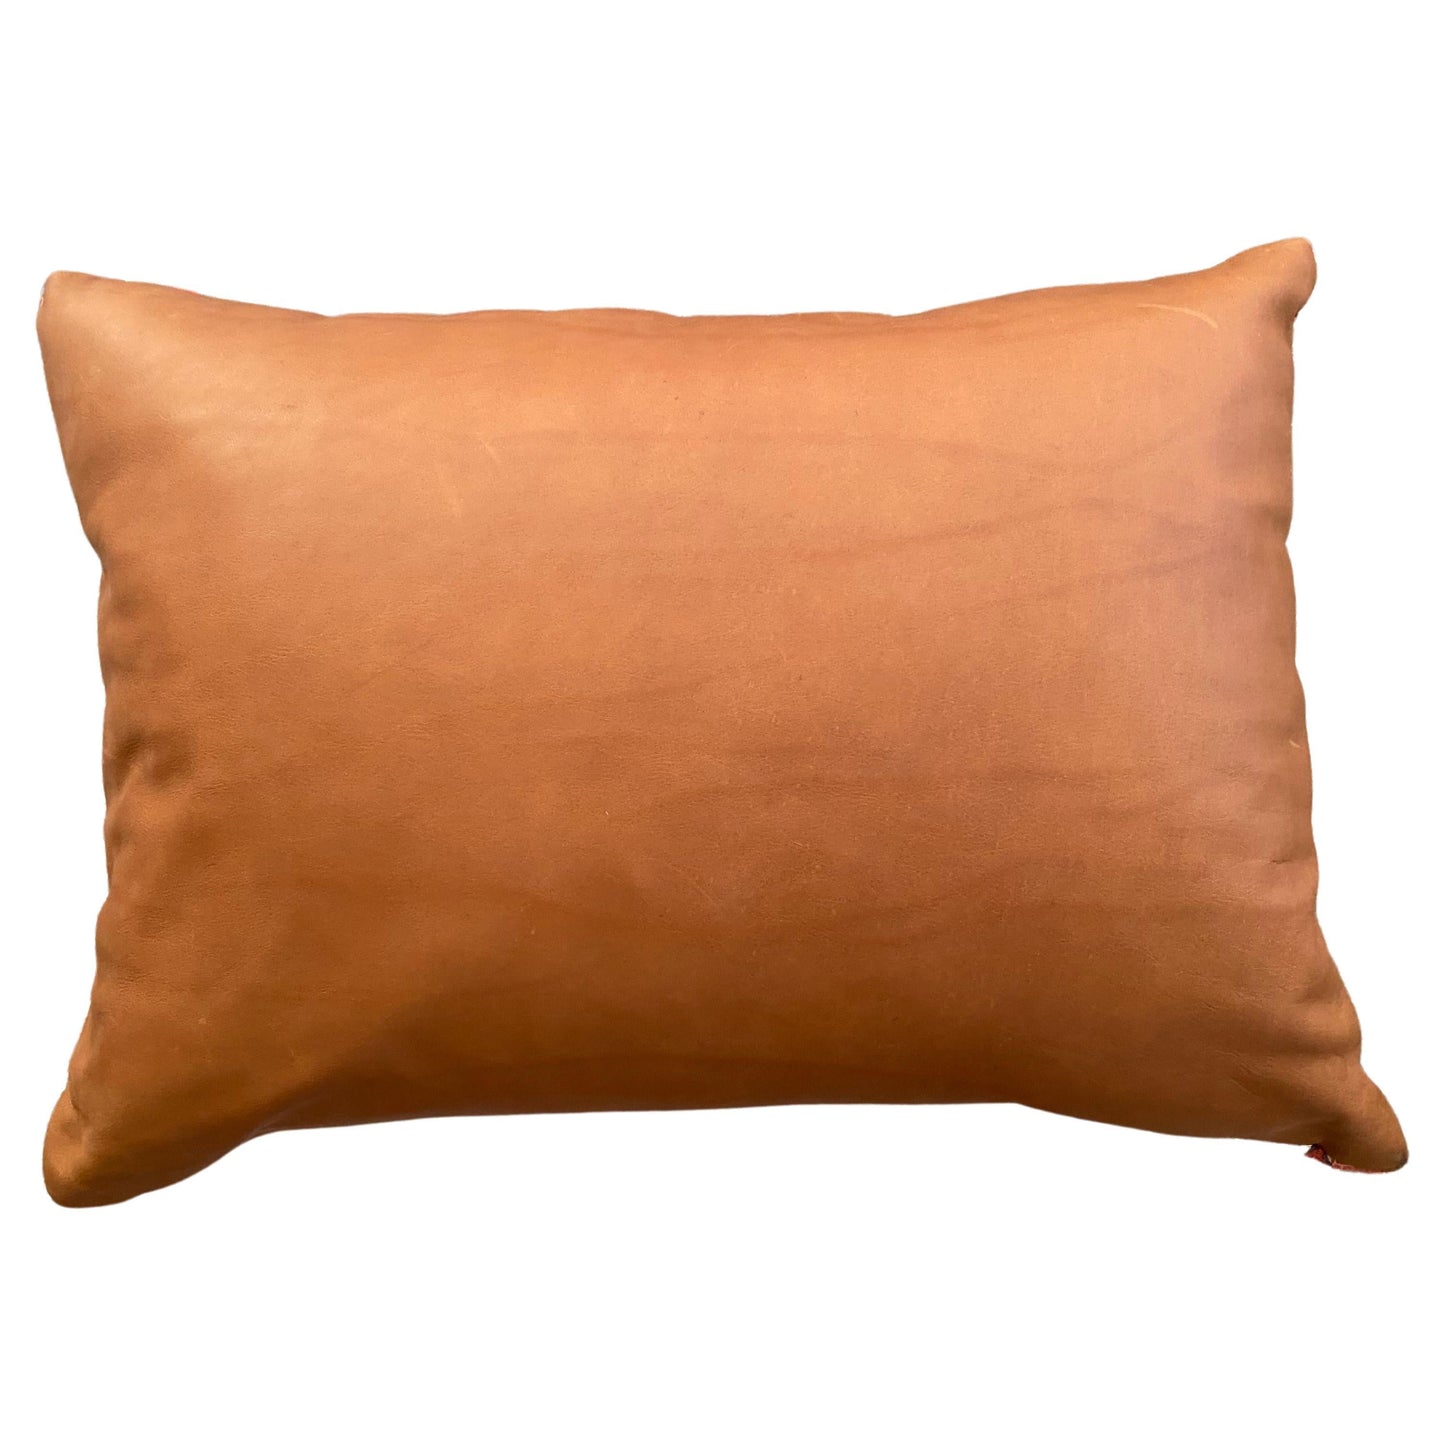 Batik Patchwork Front Lumbar Pillow with Leather Back